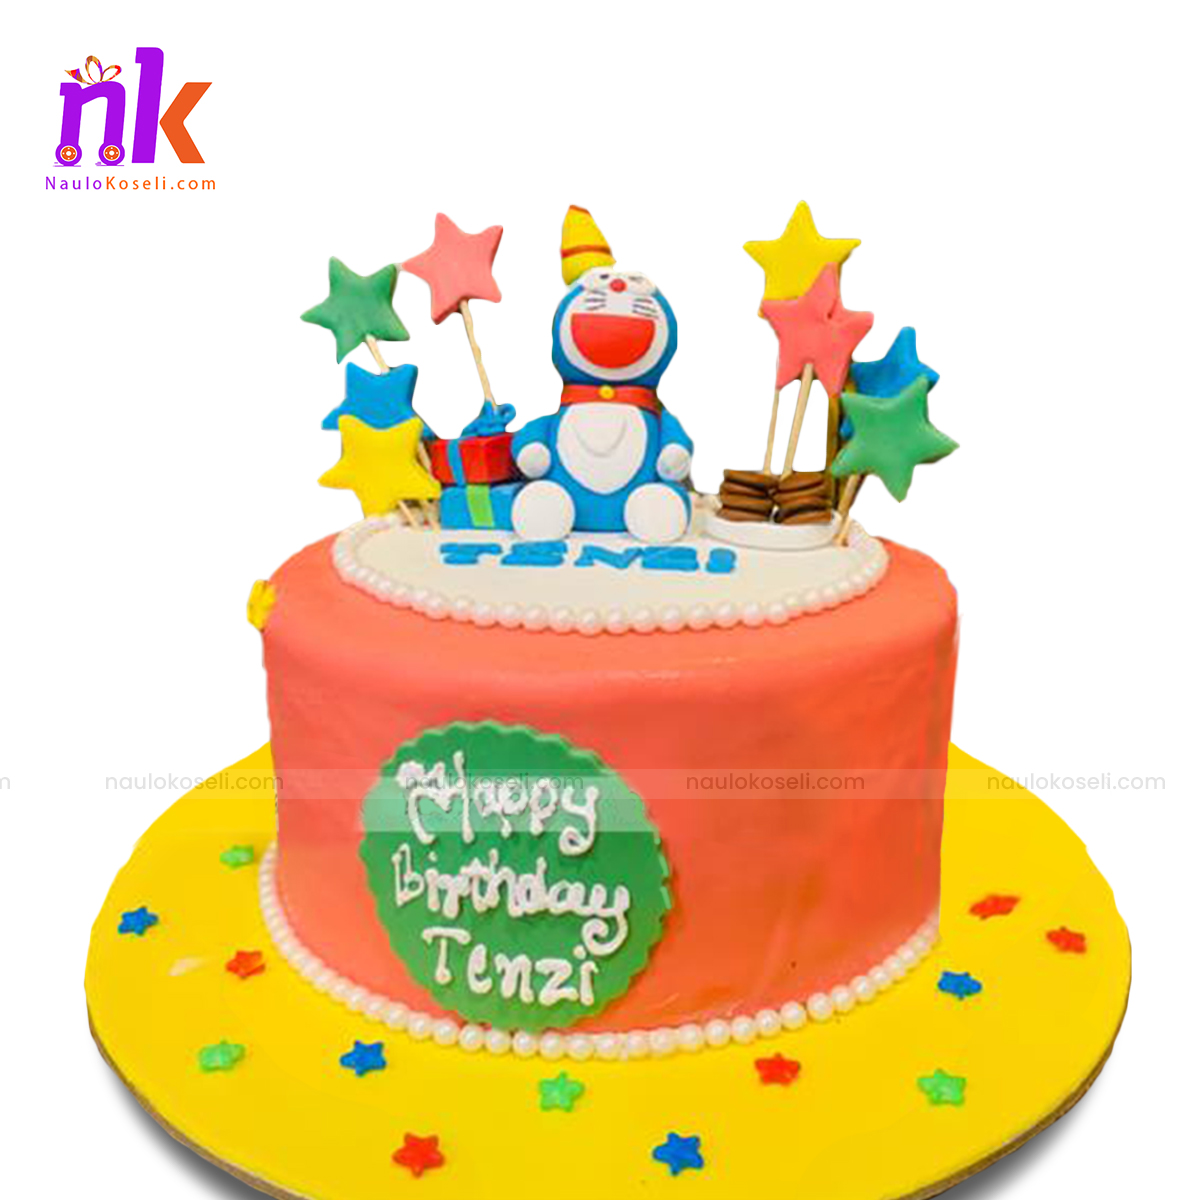 Doraemon Cake So Yummy - Decorated Cake by CakeArtVN - CakesDecor